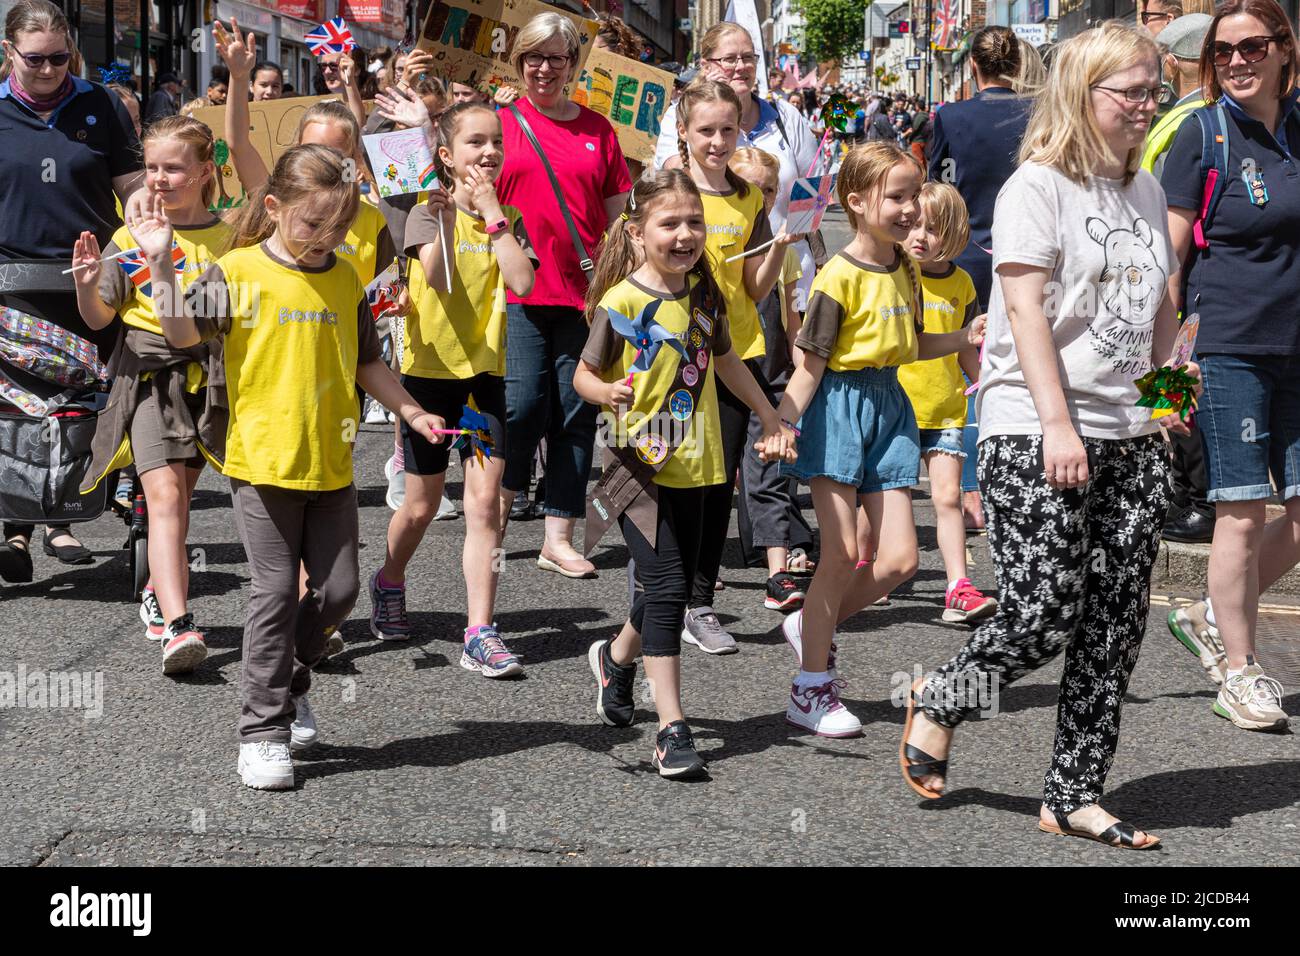 Le Grand Parade à la fête de Victoria, un événement annuel à Aldershot, Hampshire, Angleterre, Royaume-Uni. Les guides et les brownies des filles y participent. Banque D'Images